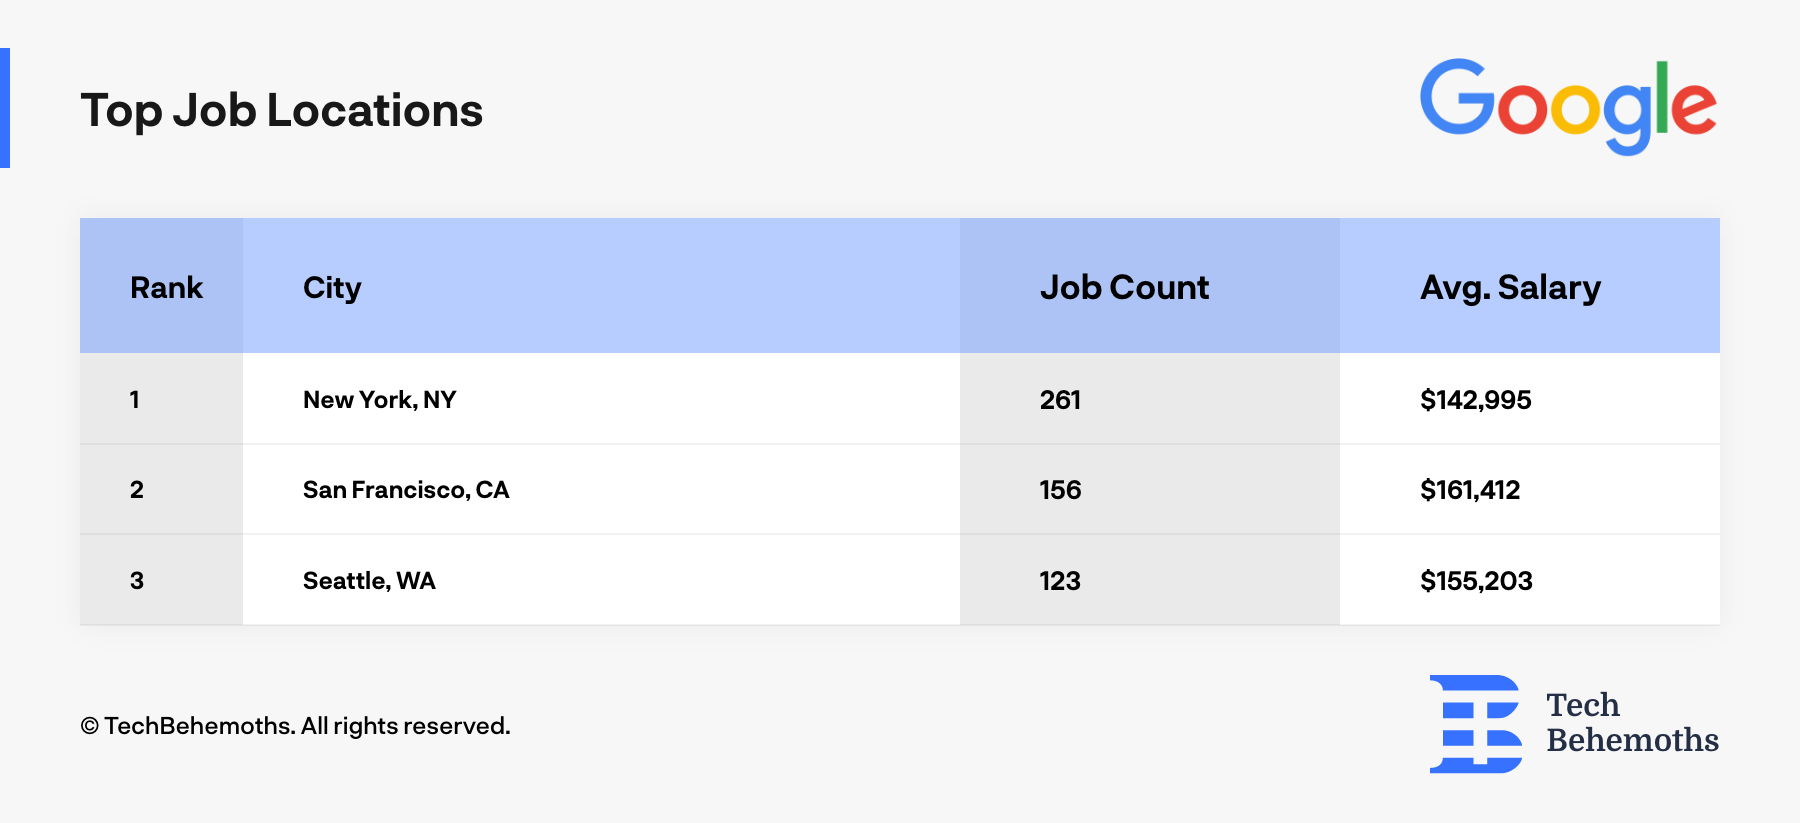 Top Google Job Locations